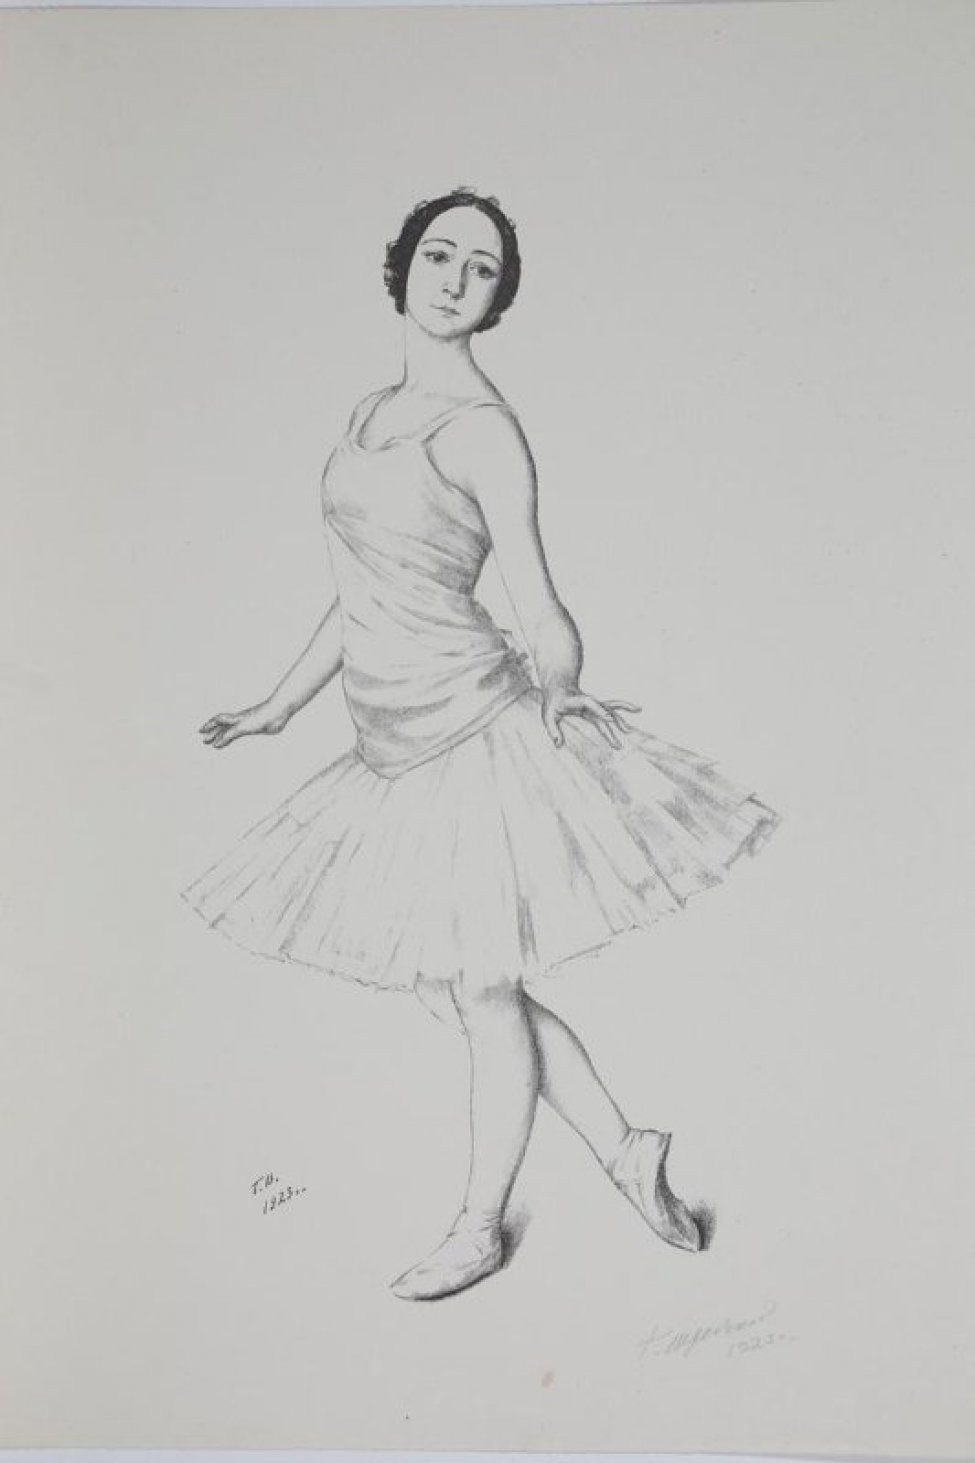 Изображена в рост балерина в пачке до колен. Фигура развернута на зрителя в 3/4 левом повороте, лицо анфас, руки слегка приподняты и разведены  в стороны, правая нога чуть отведена назад.